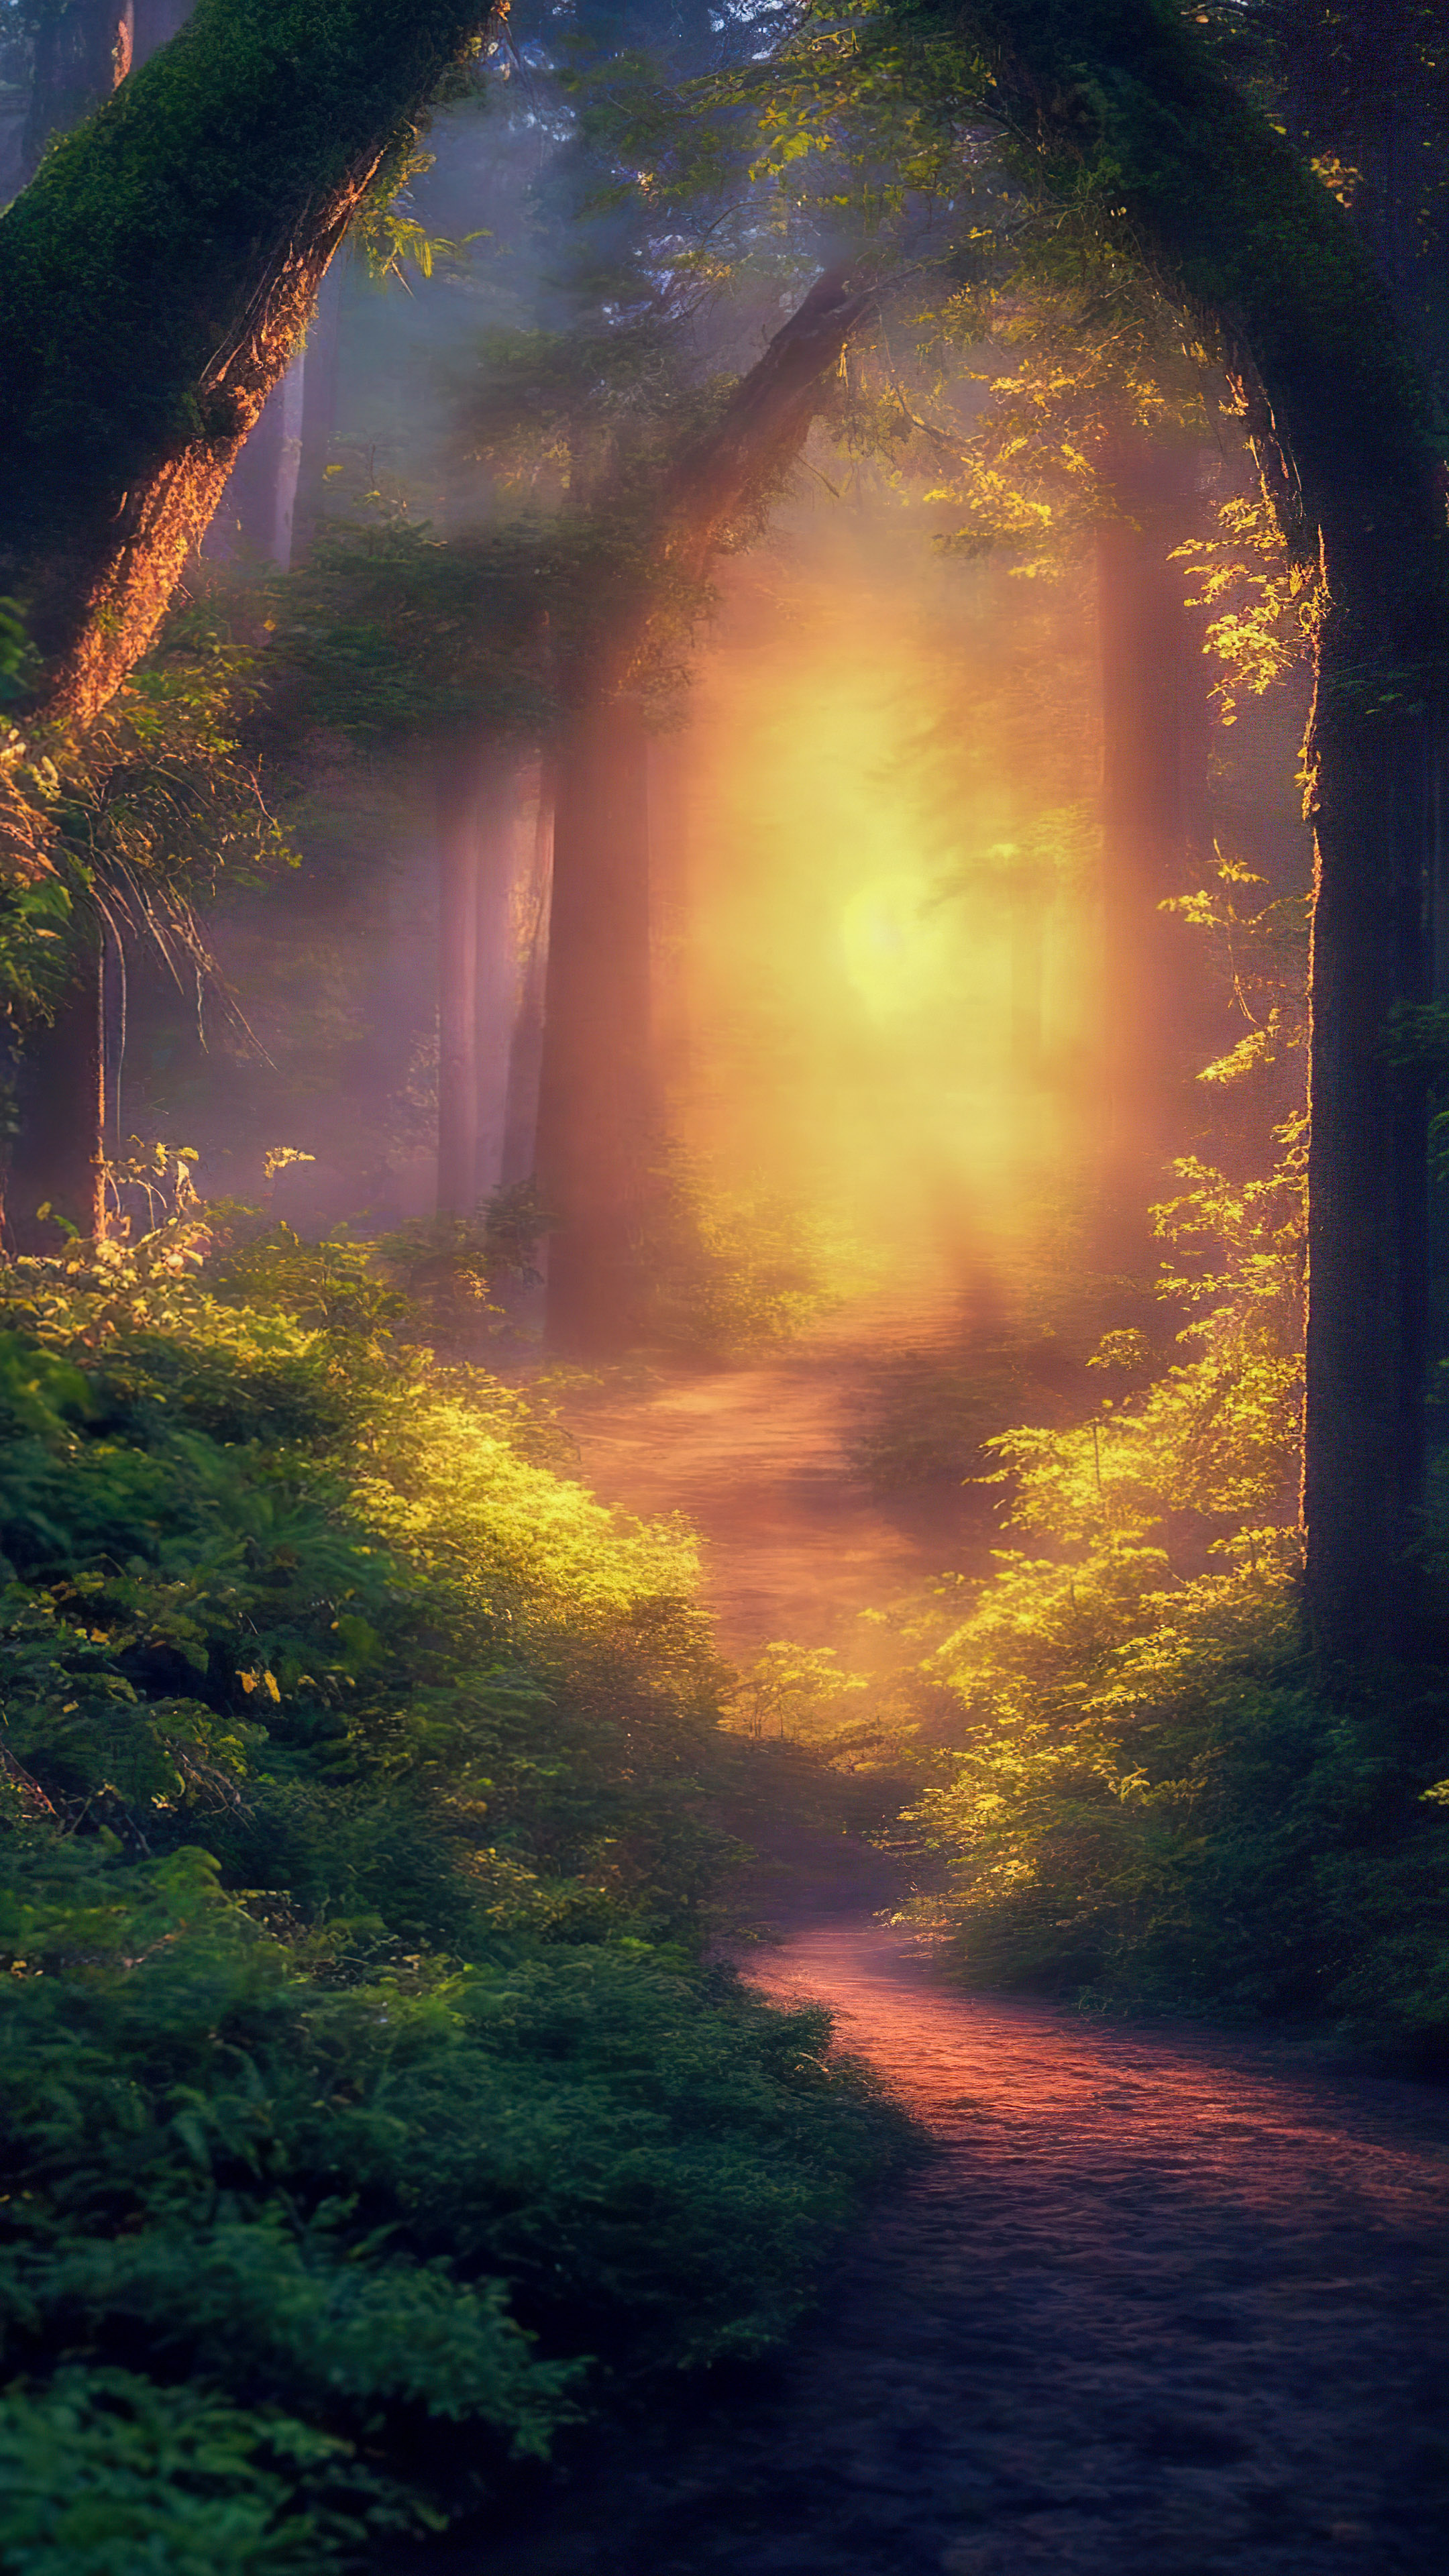 Immergez-vous dans une forêt magique illuminée par la douce lueur des lucioles lors d'une chaude soirée d'été avec notre arrière-plan nature en 4K.